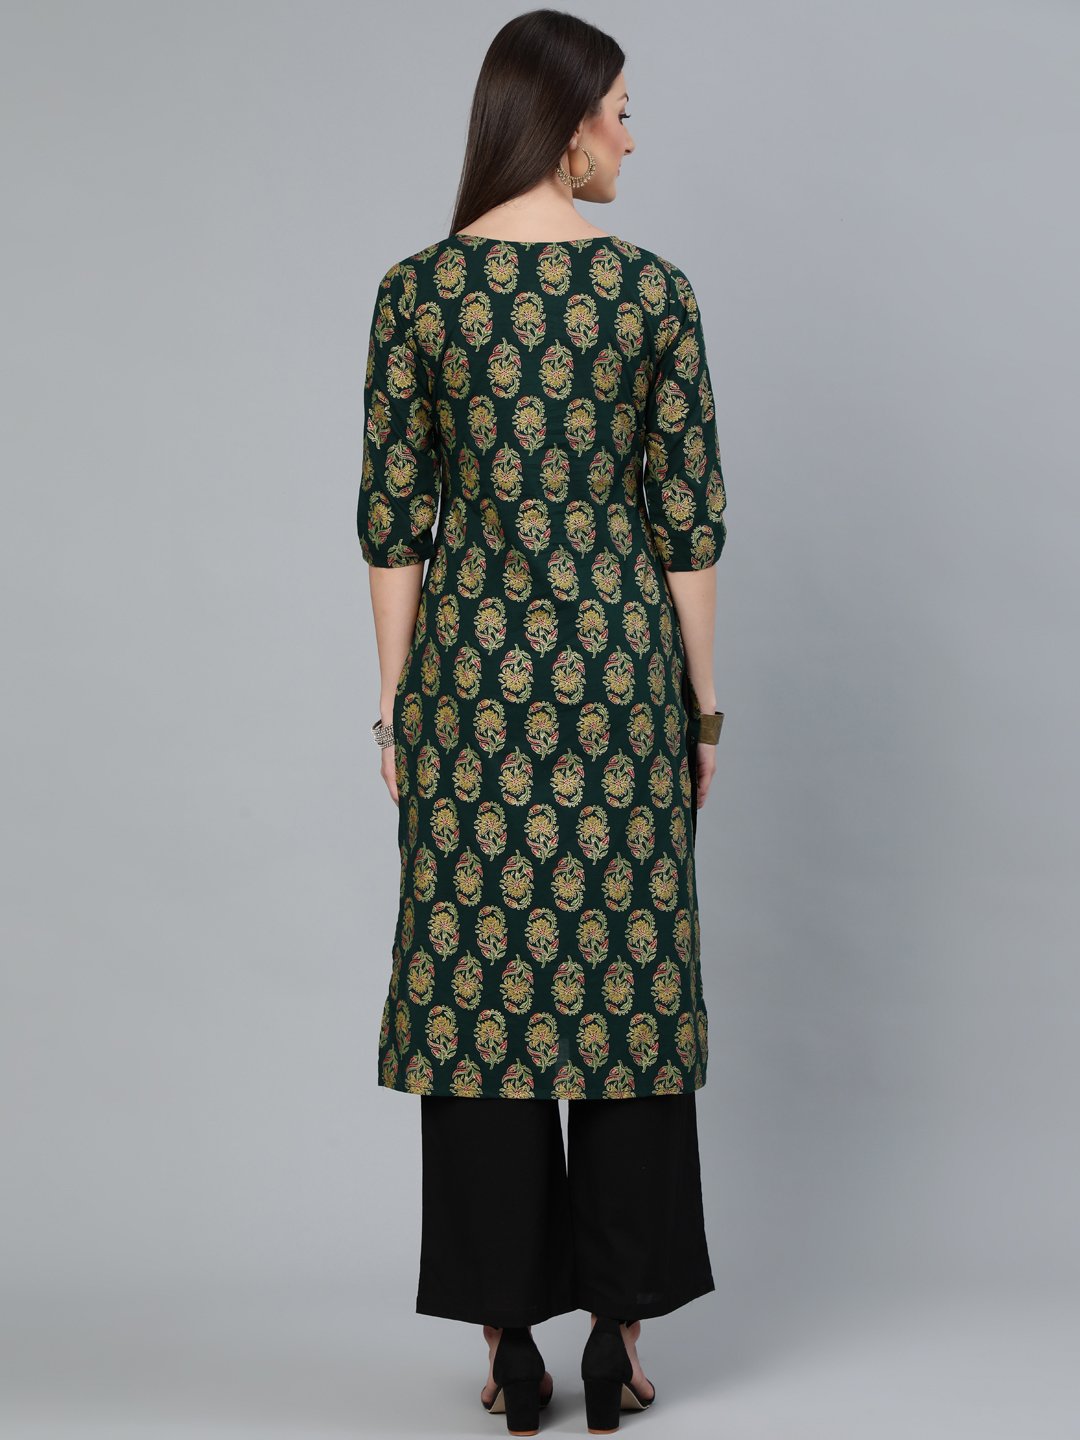 Women's Dark Green & Gold Printed Straight Kurta With Round Neck & Three Qauter Sleeves - Nayo Clothing